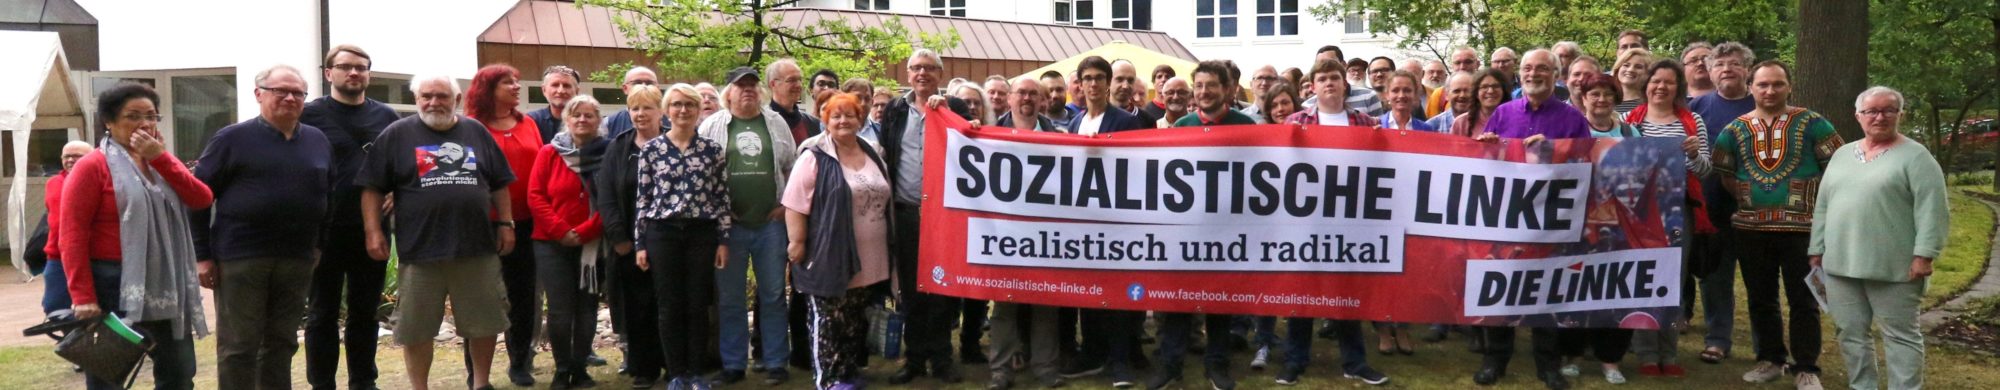 Sozialistische Linke